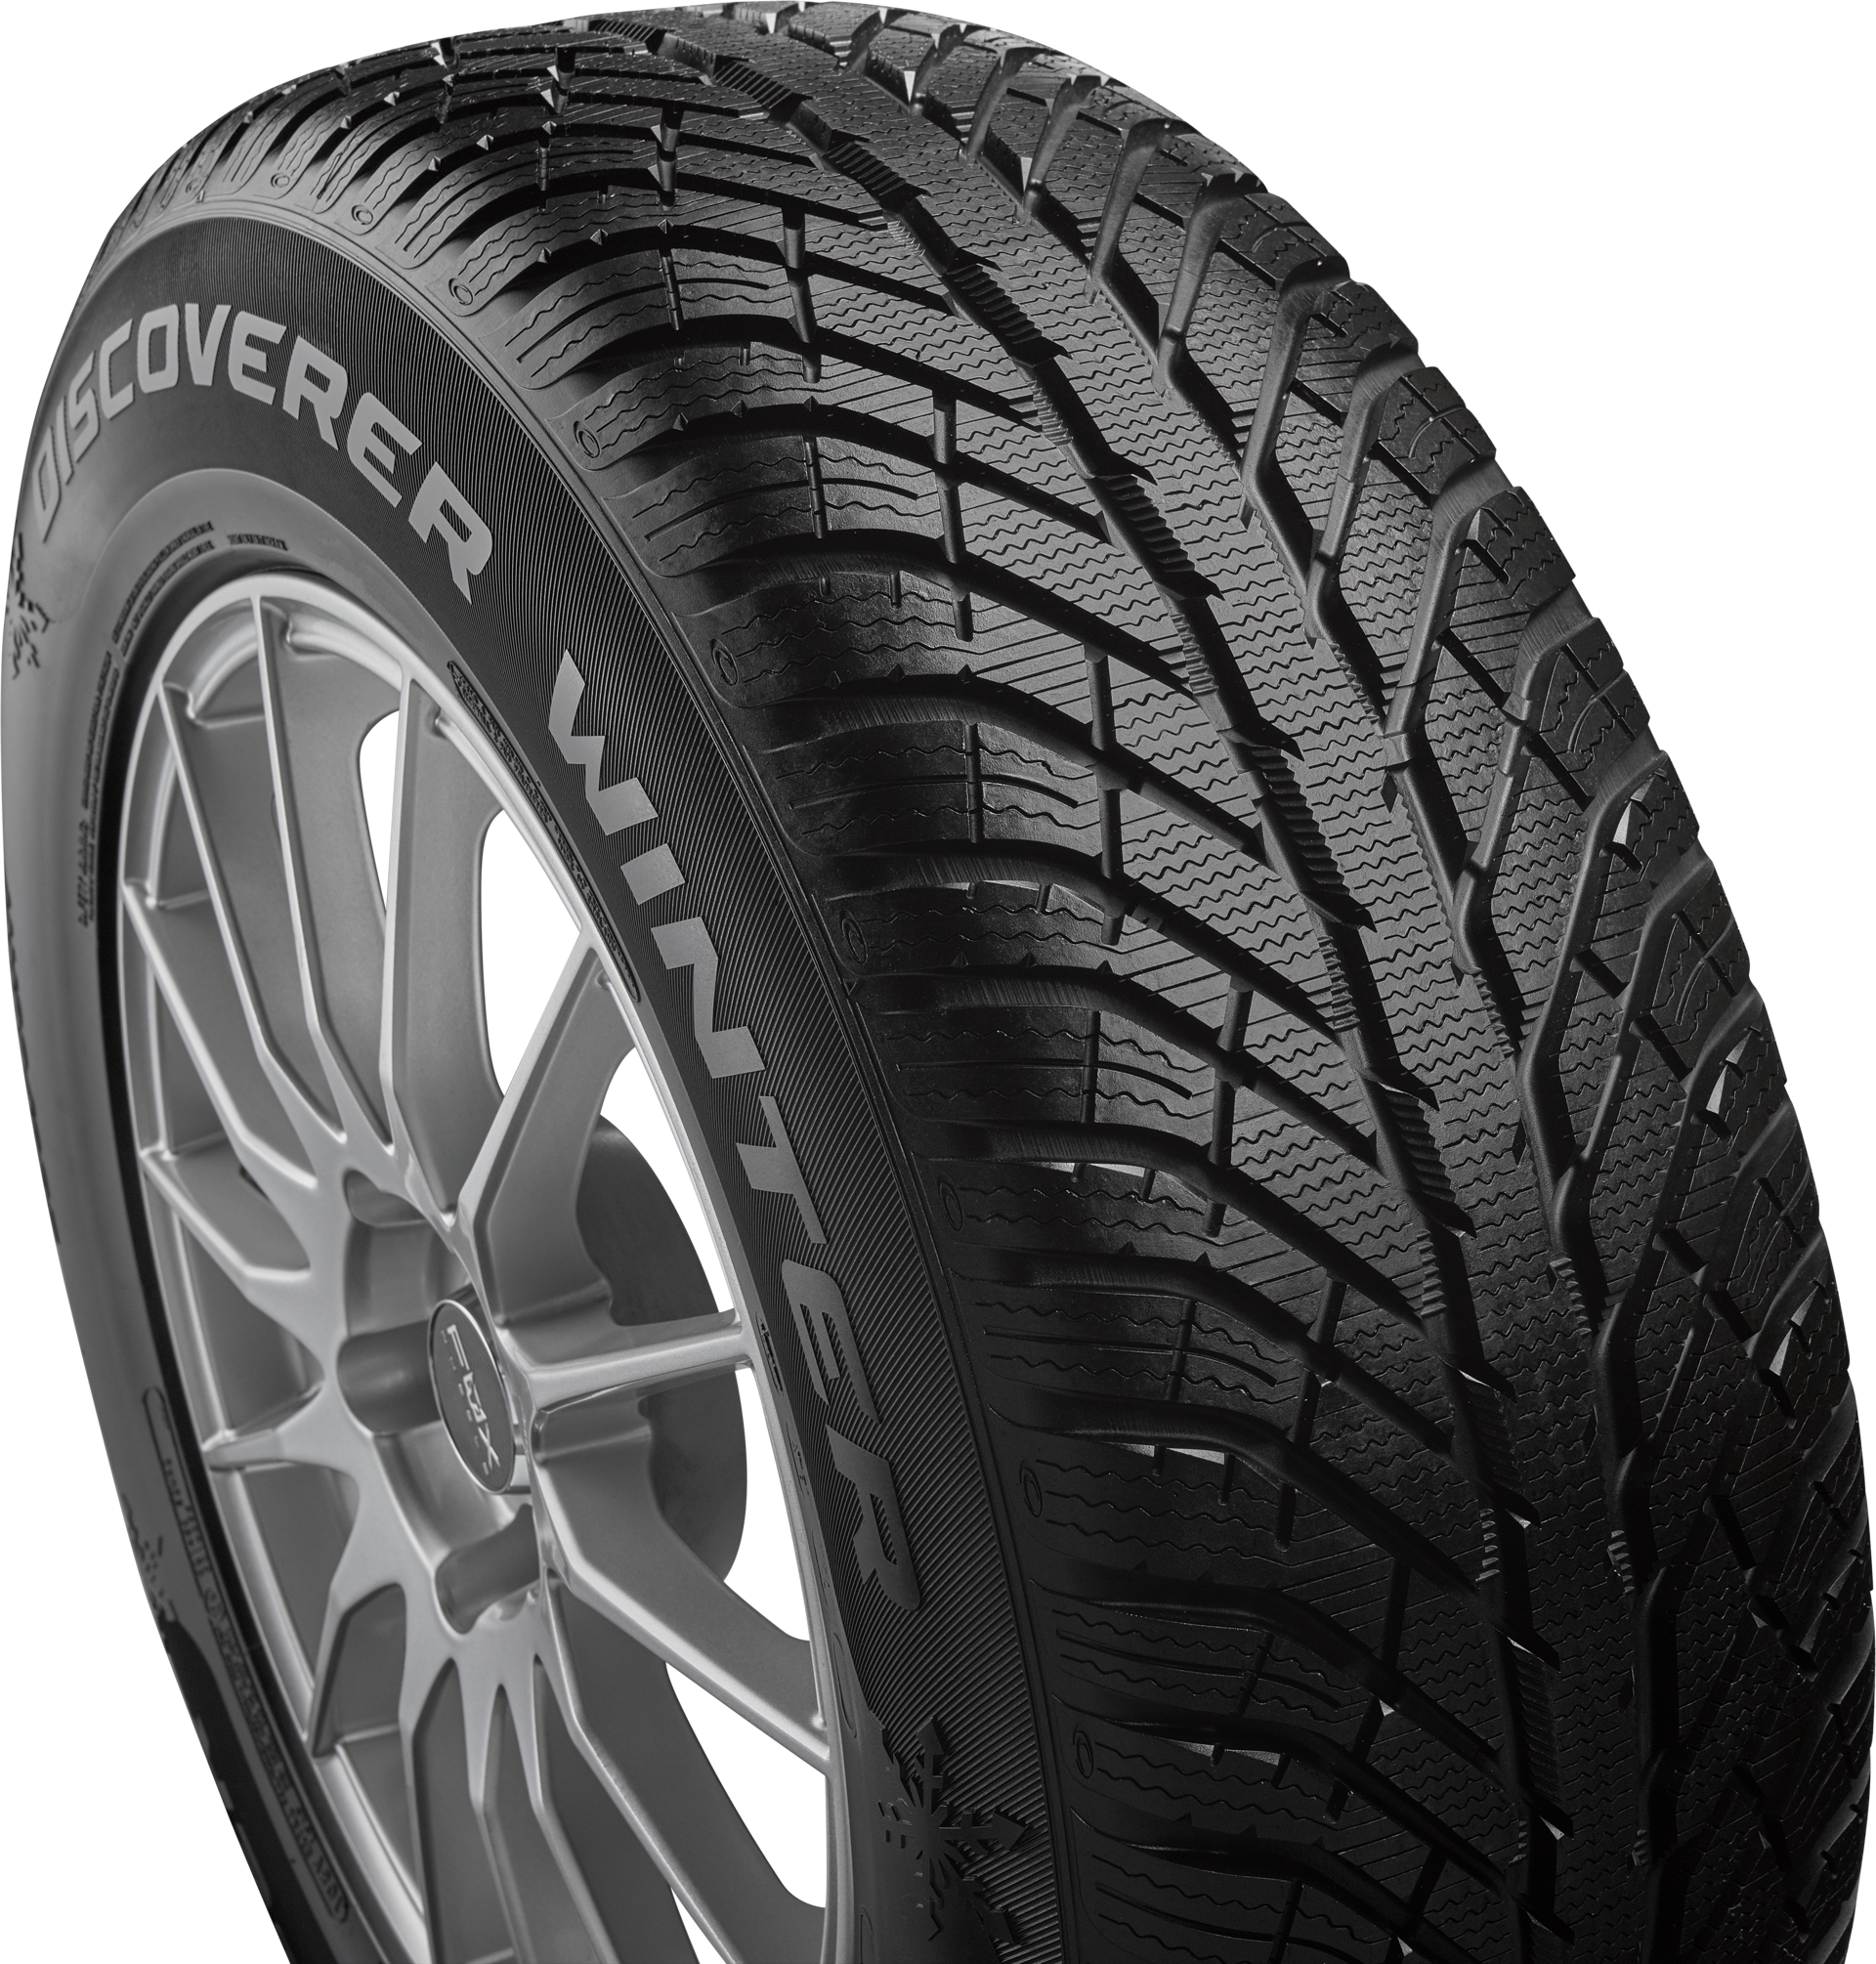 Discoverer Winter - Cooper Tires™ Official Website